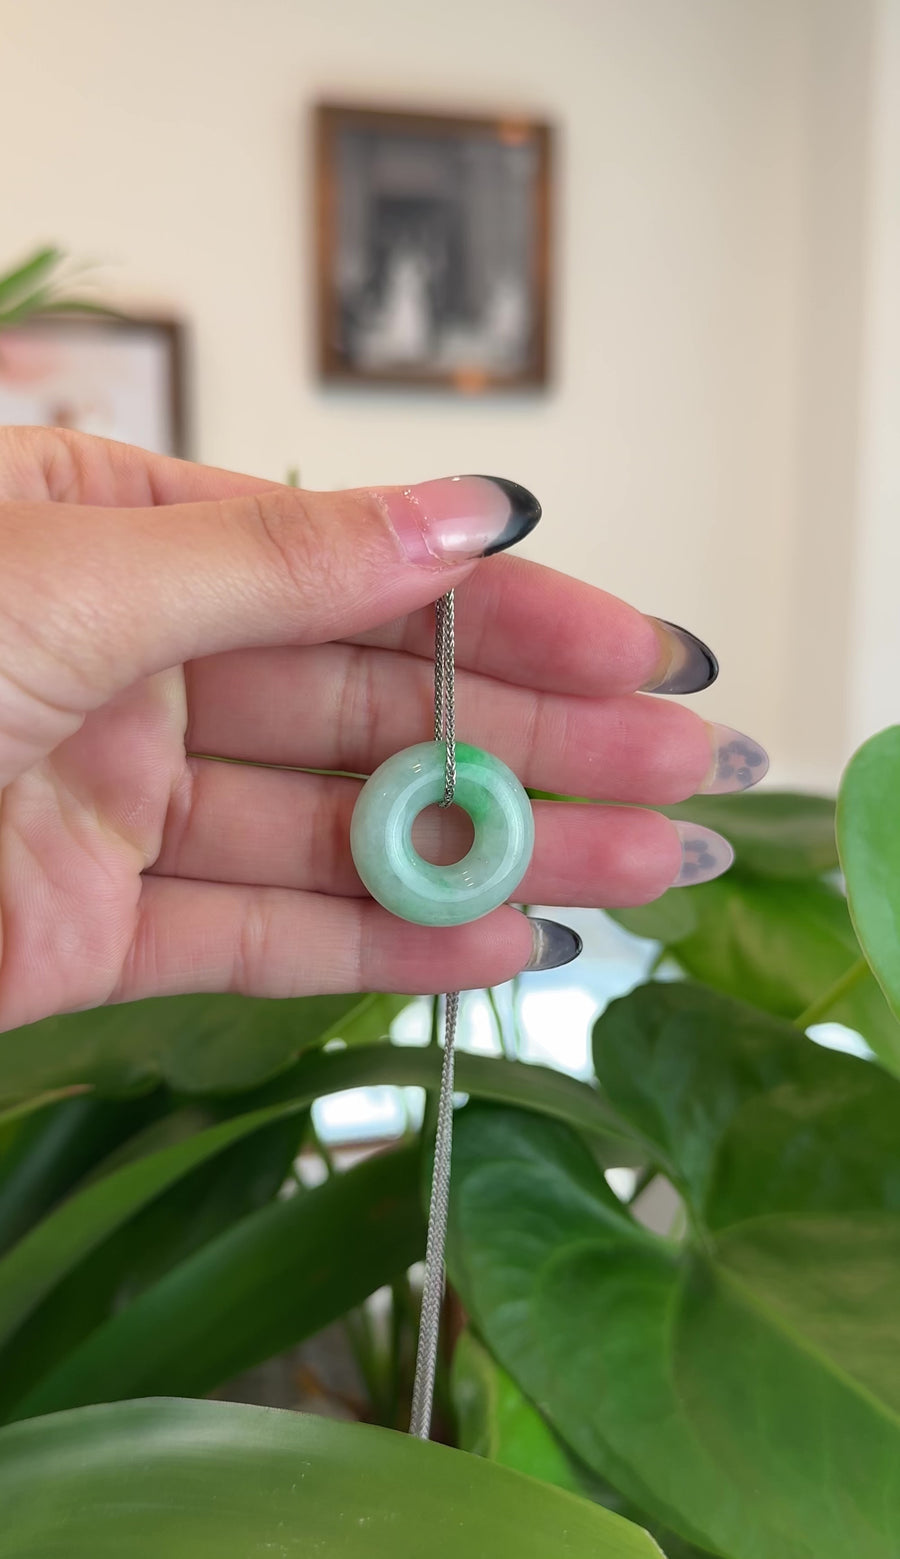 Baikalla "Good Luck Button" Necklace Green Jadeite Jade Pendant For Men